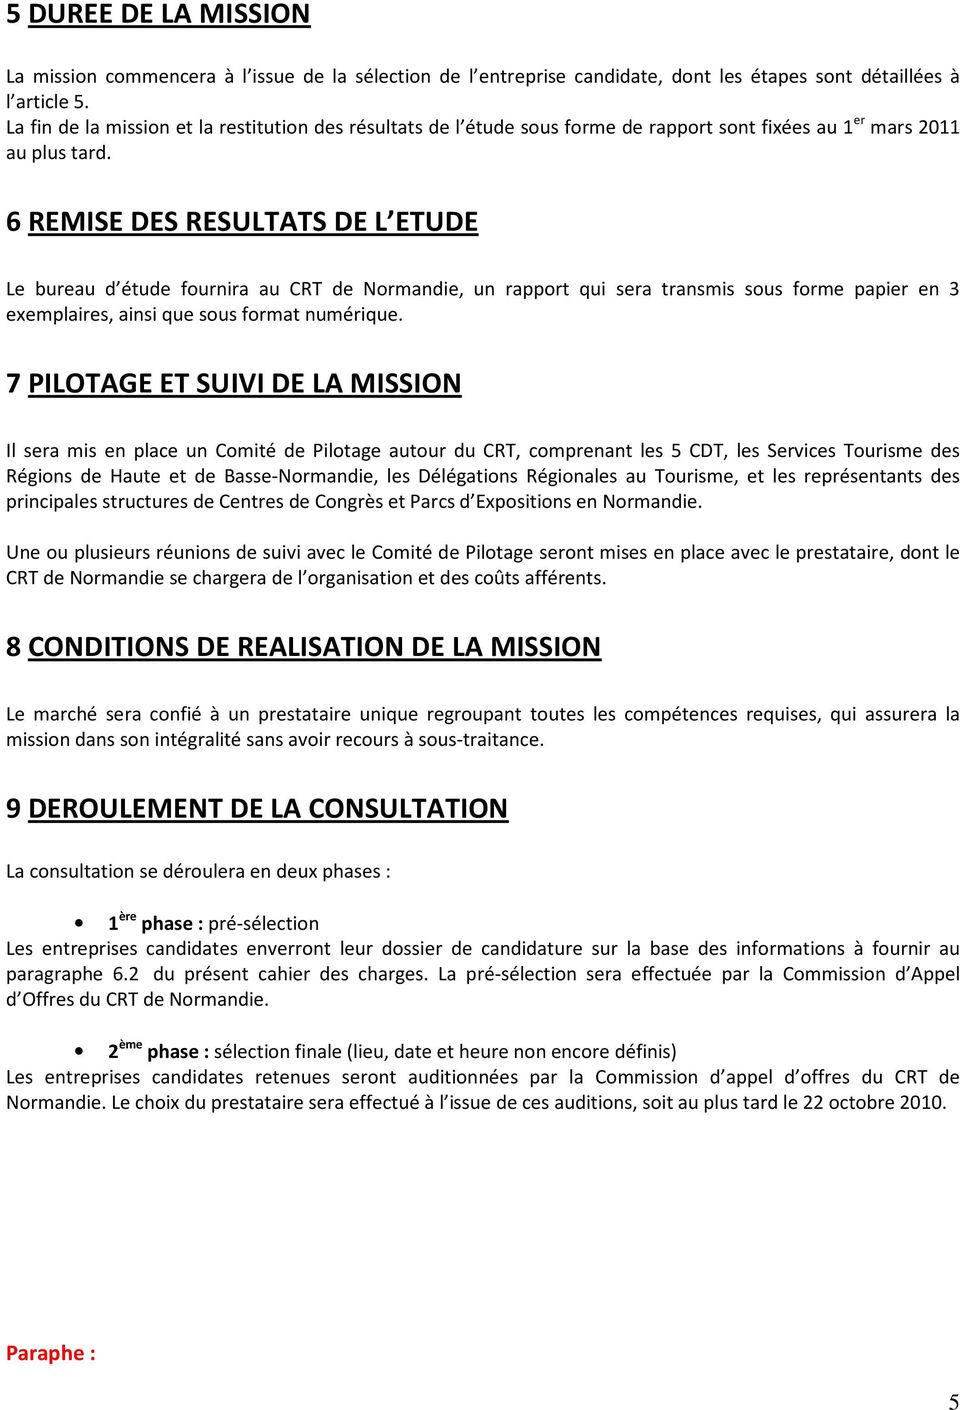 6 REMISE DES RESULTATS DE L ETUDE Le bureau d étude fournira au CRT de Normandie, un rapport qui sera transmis sous forme papier en 3 exemplaires, ainsi que sous format numérique.